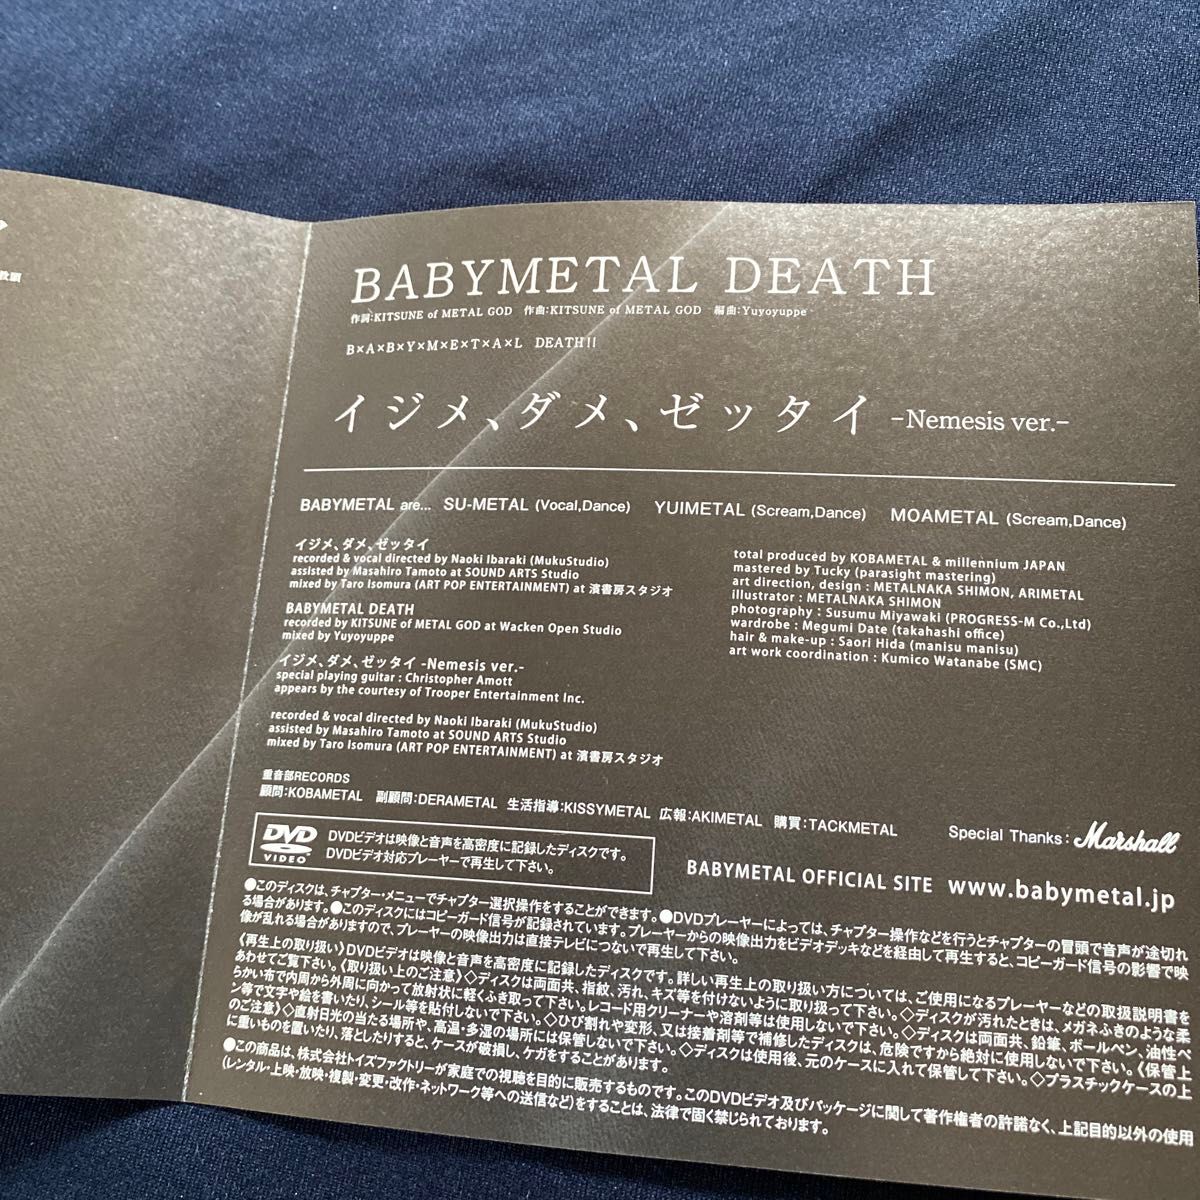 「イジメ、ダメ、ゼッタイ」 “ I 盤 初回生産限定盤CD+DVD